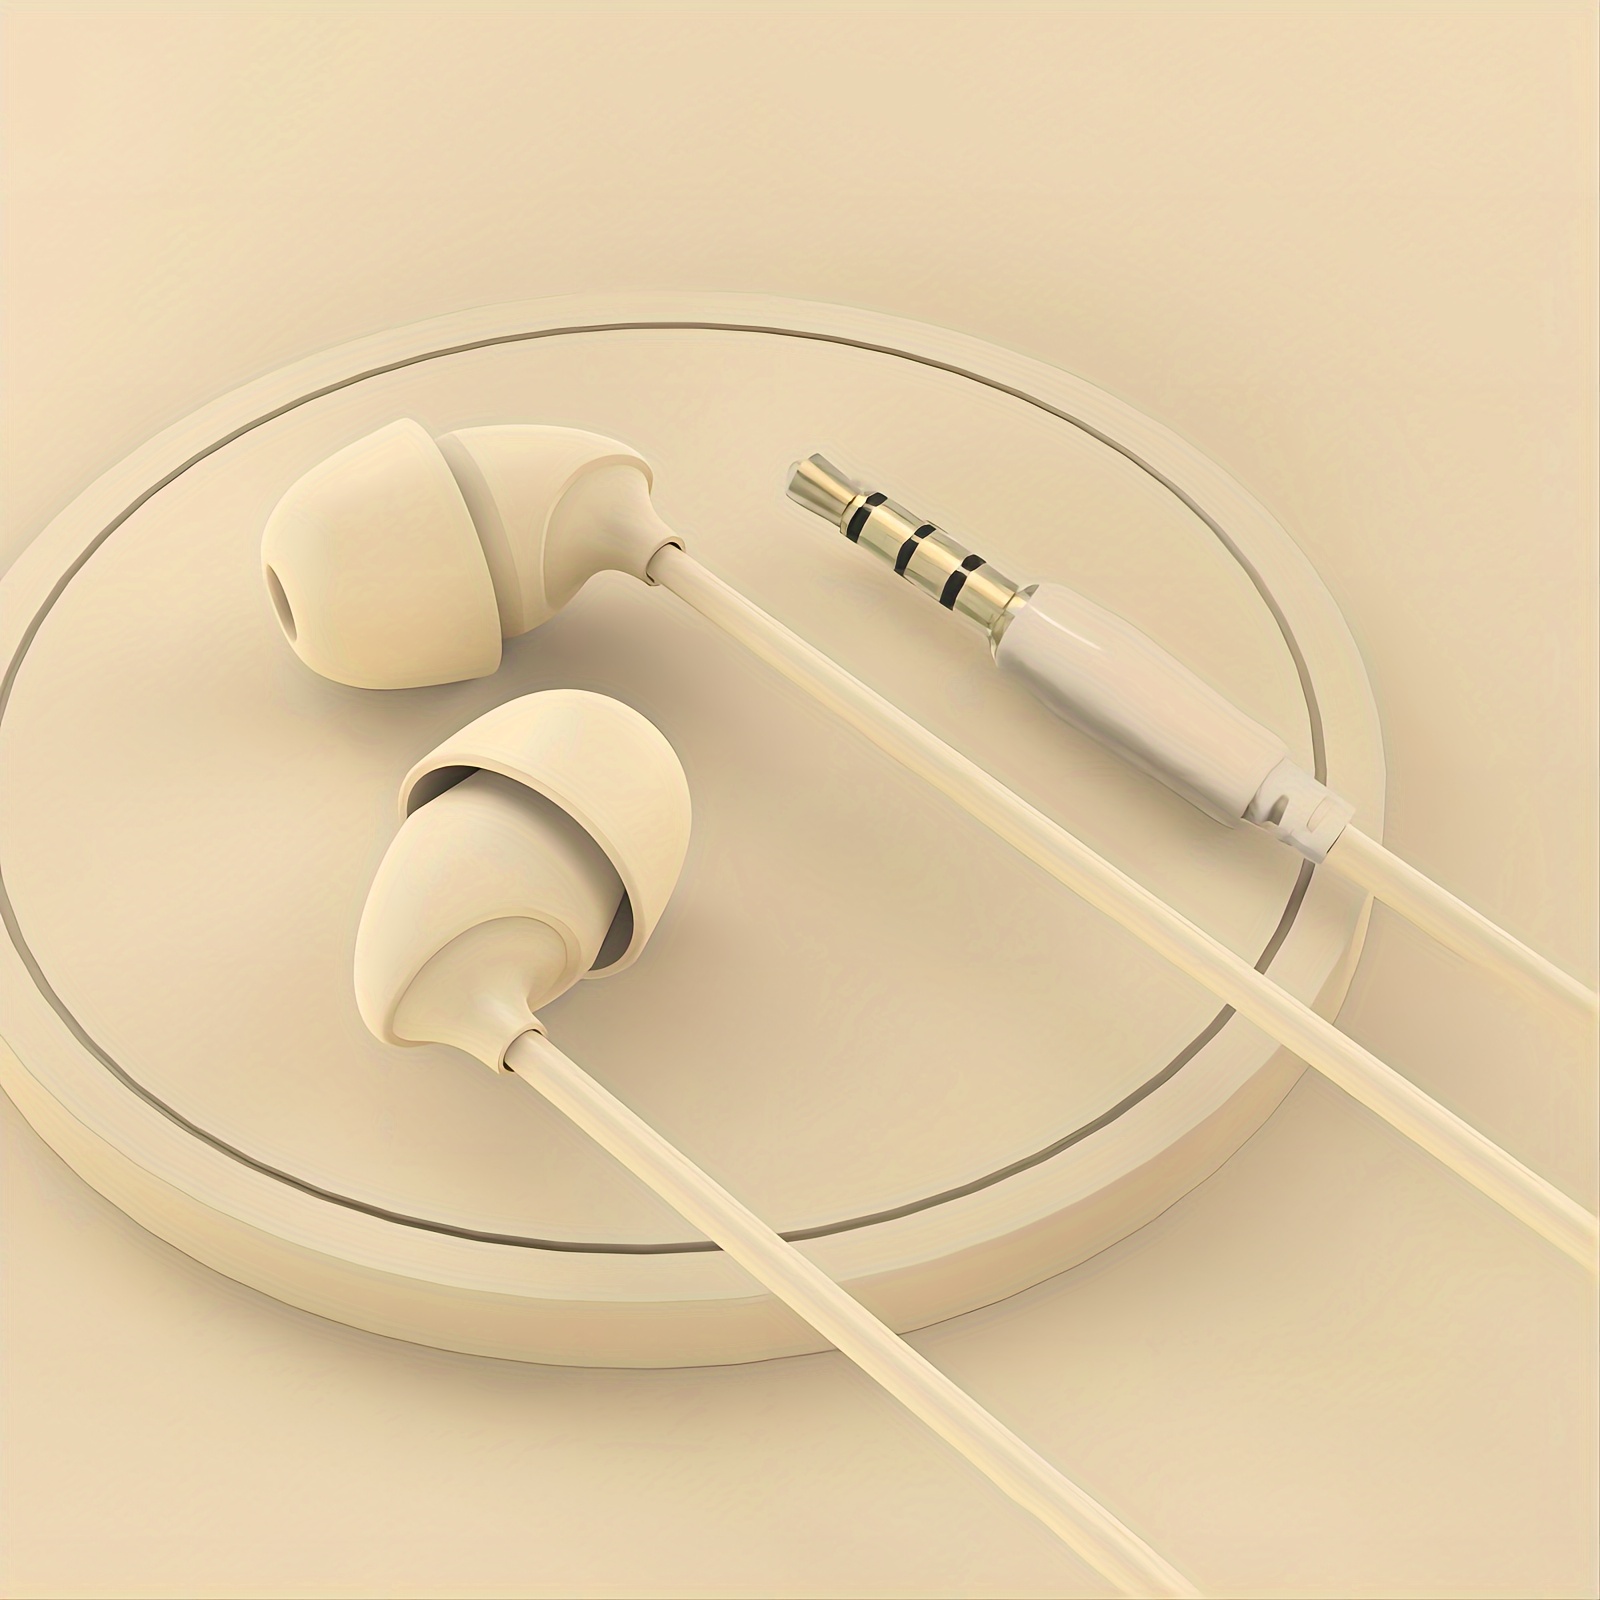 Acogedora banda para auriculares | Auriculares para dormir | Diadema  Bluetooth | Auriculares para dormir con diadema deportiva de larga duración  con